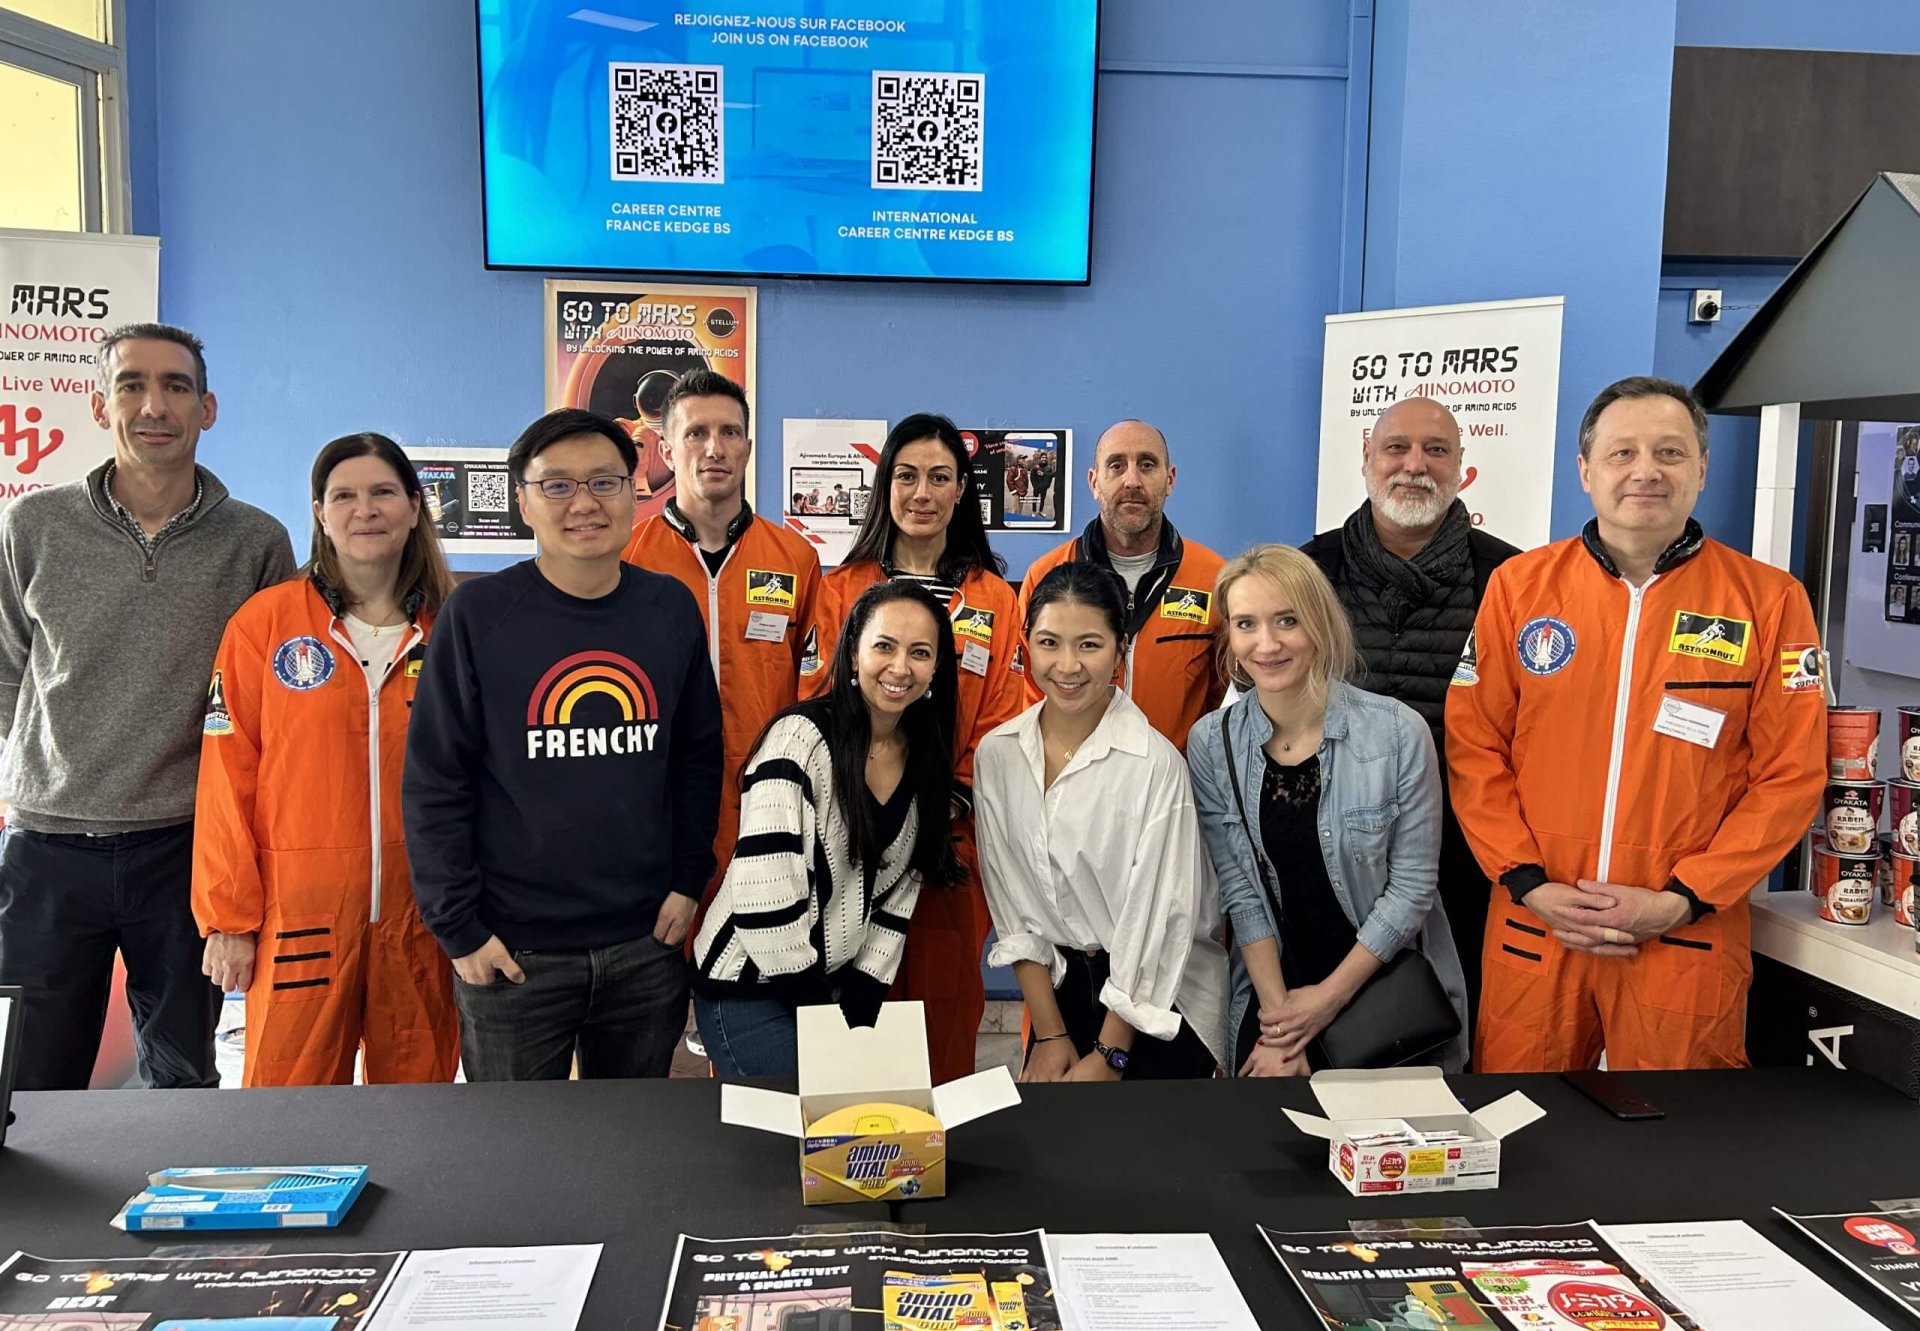 Ornella Silva (centro izquierda) y Yuka Iino (centro derecha) con otros miembros del equipo Go to Mars.